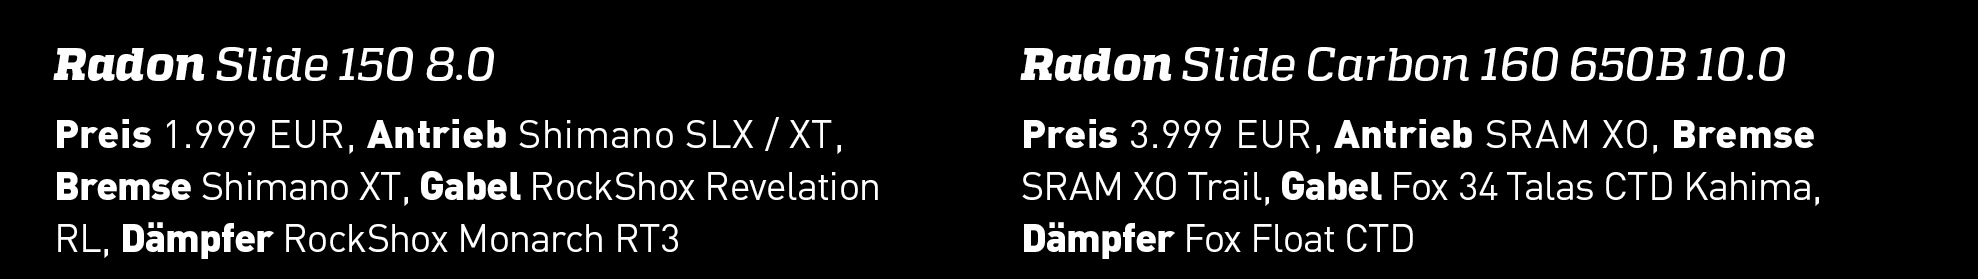 Weitere Modellvariante: Das Radon Slide 150 8.0 und das Slide Carbon 160 650B 10.0 